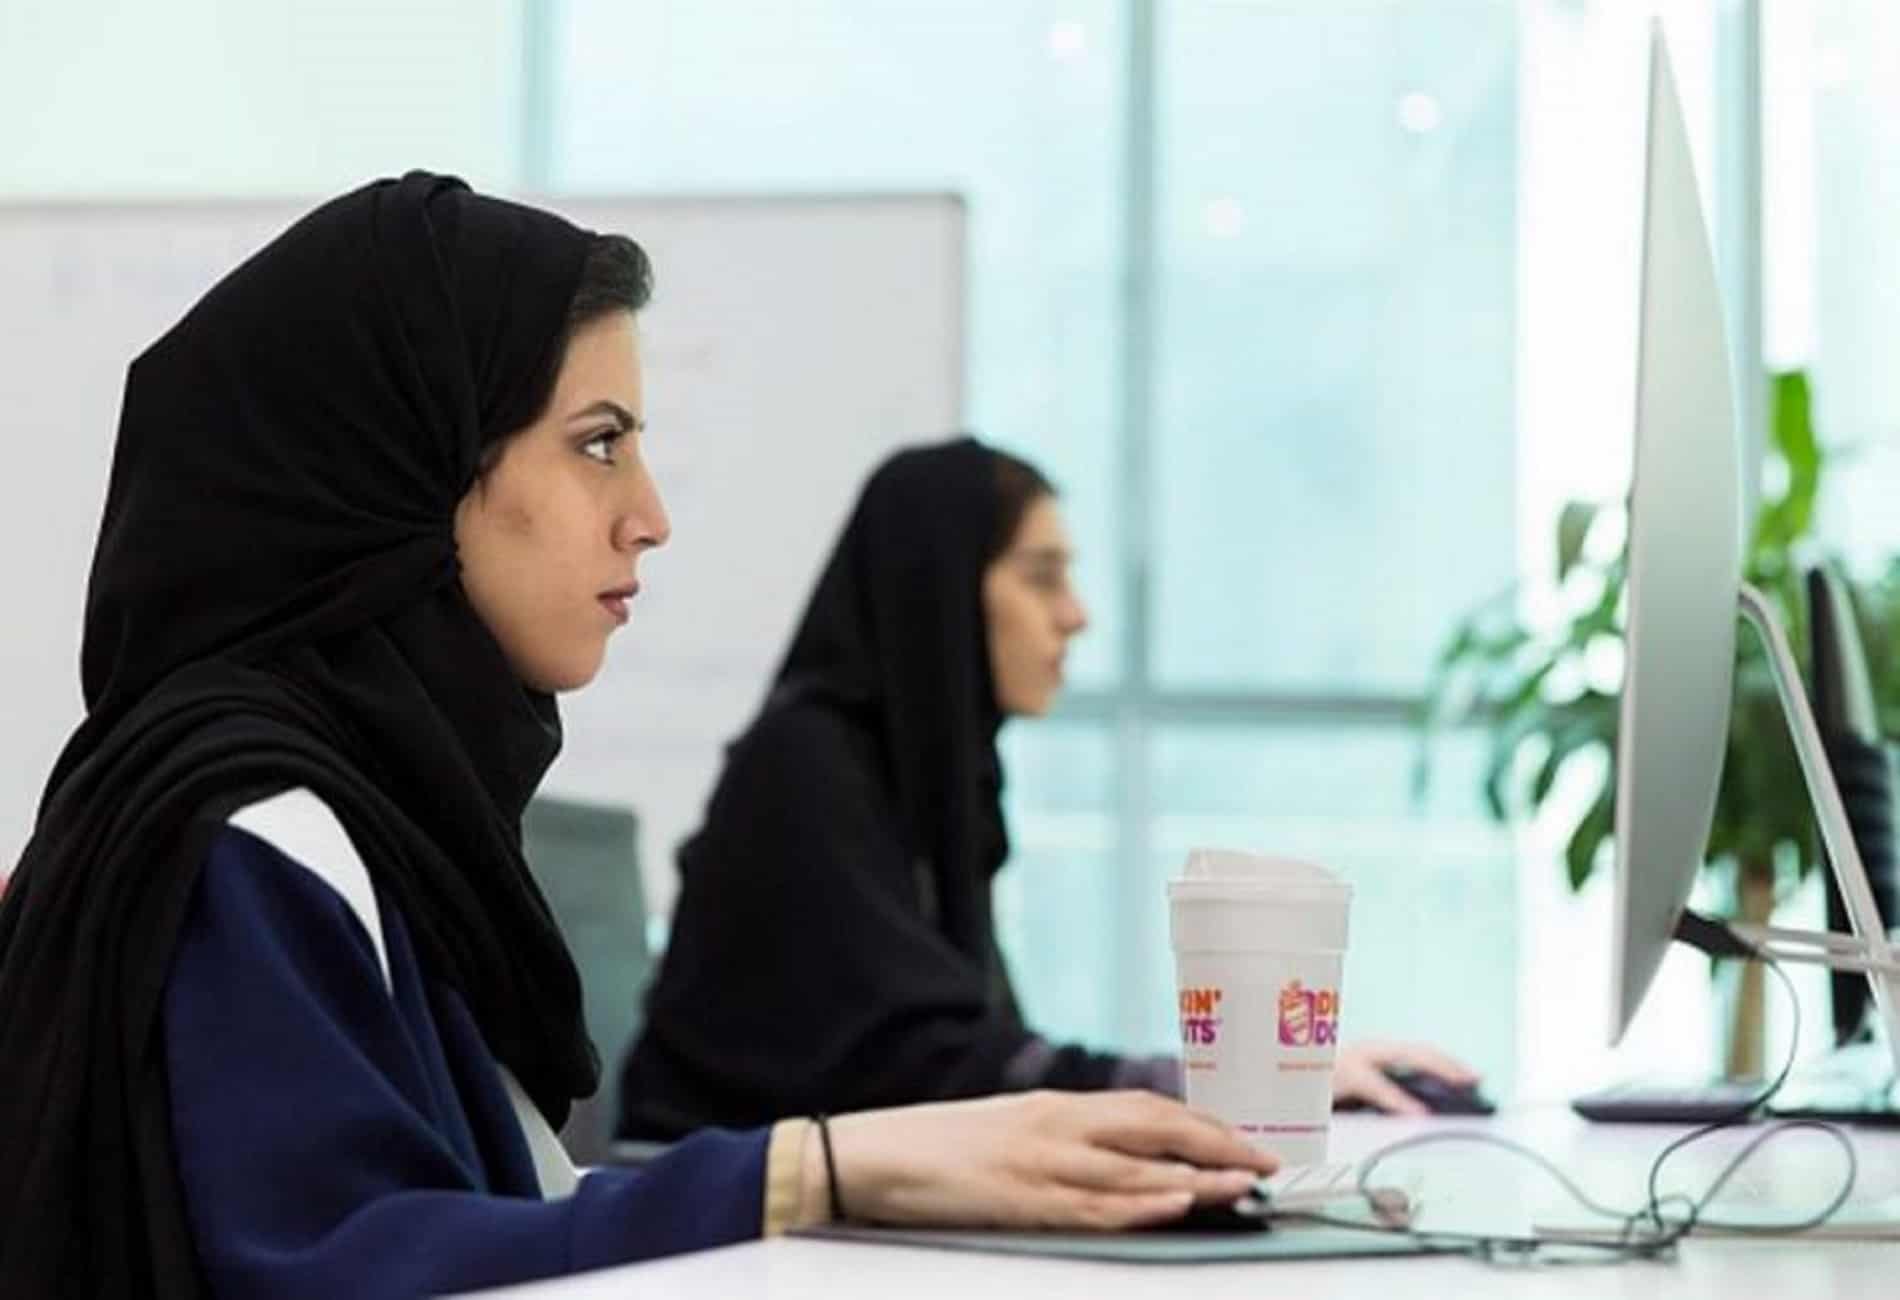 البنك الدولي: المملكة الأكثر تقدماً وإصلاحاً في الأنظمة واللوائح المرتبطة بالمرأة بين (190) دولة لتصبح بذلك الأولى خليجياً والثانية عربياً